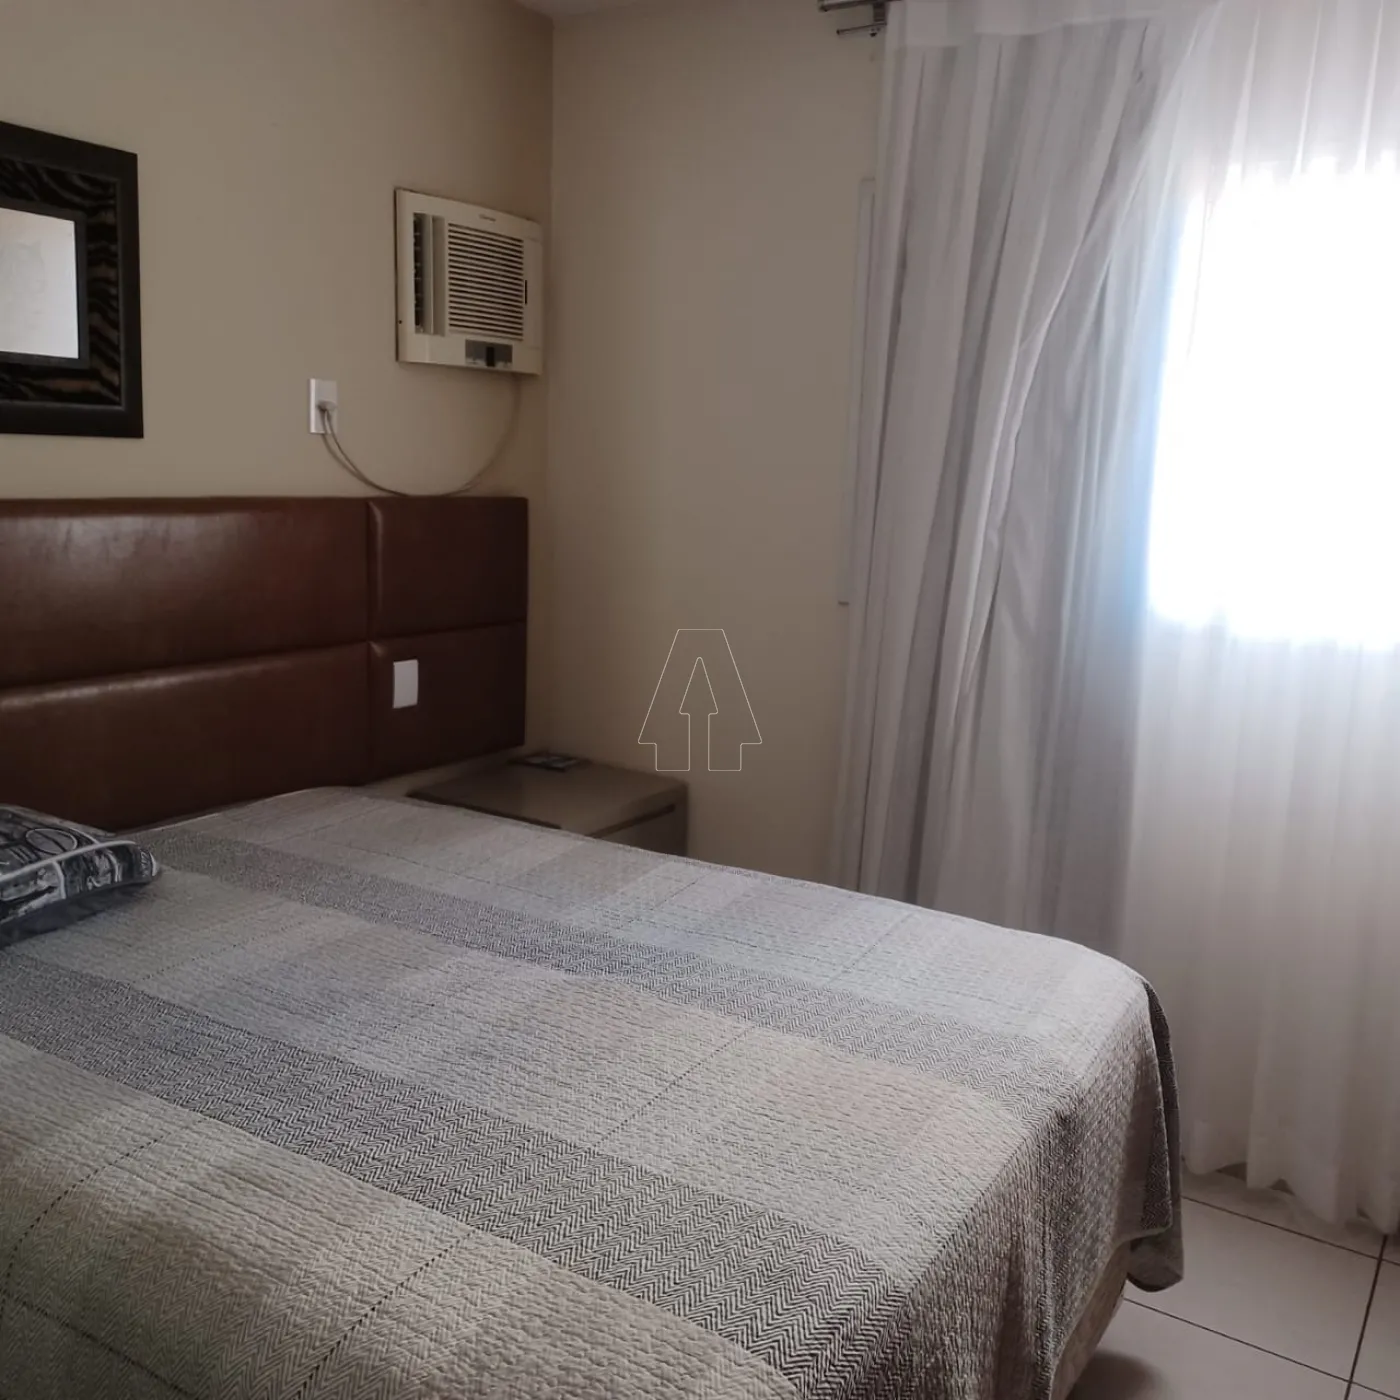 Alugar Apartamento / Padrão em Araçatuba R$ 1.400,00 - Foto 4